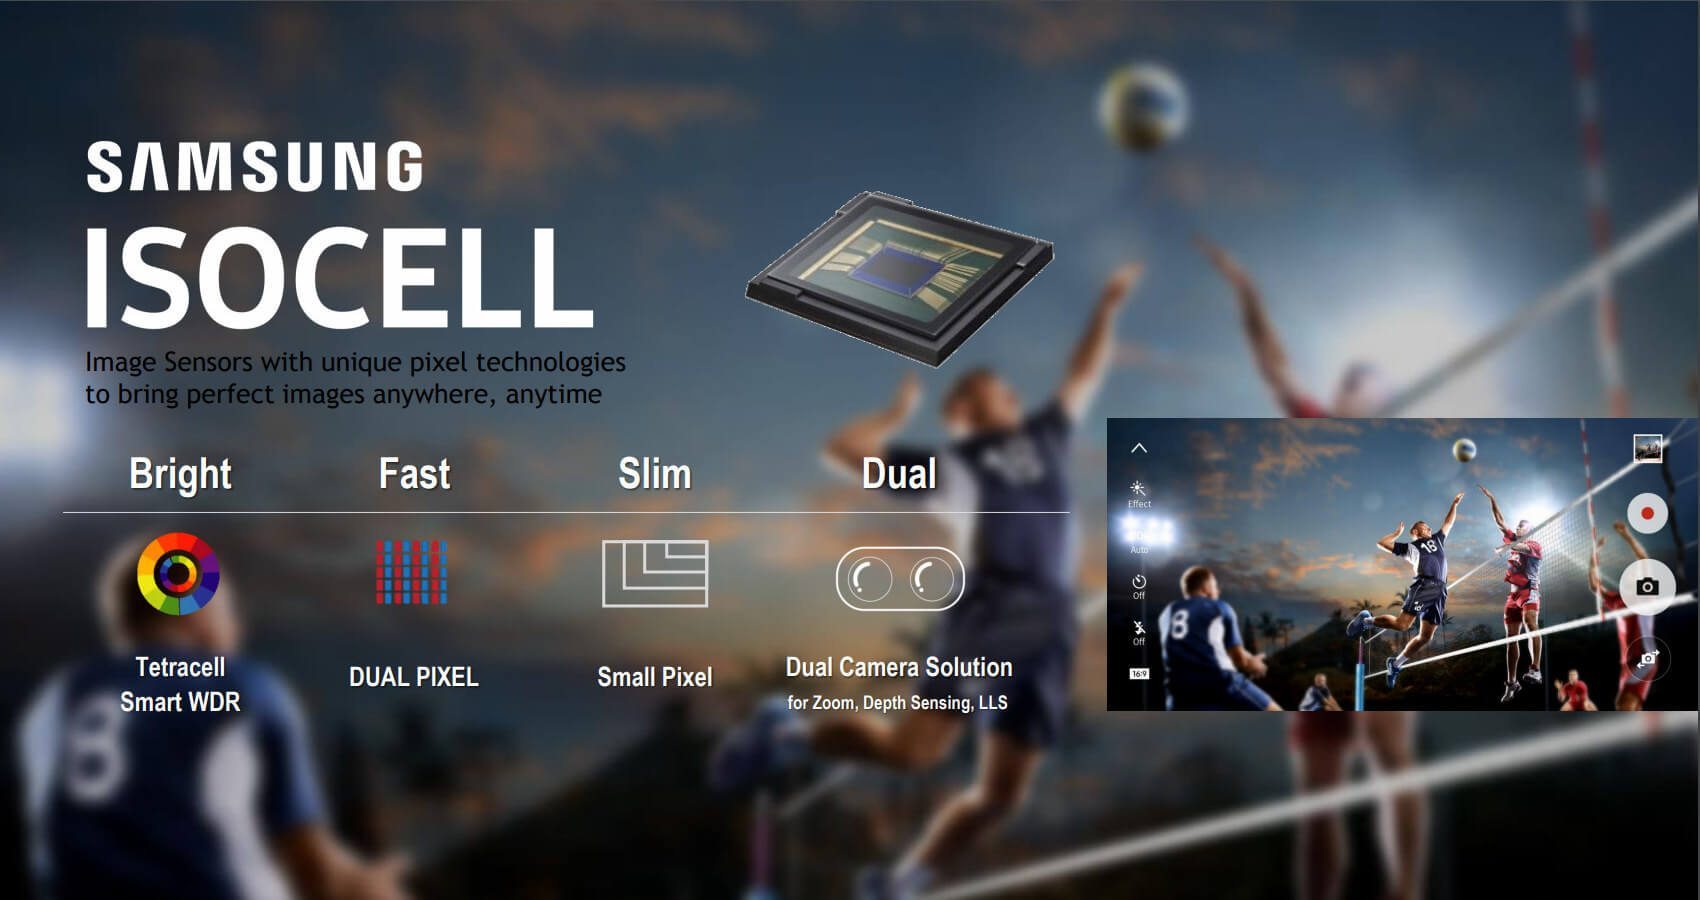 Samsung en büyük görüntü sensörü üreticisi olma yolunda